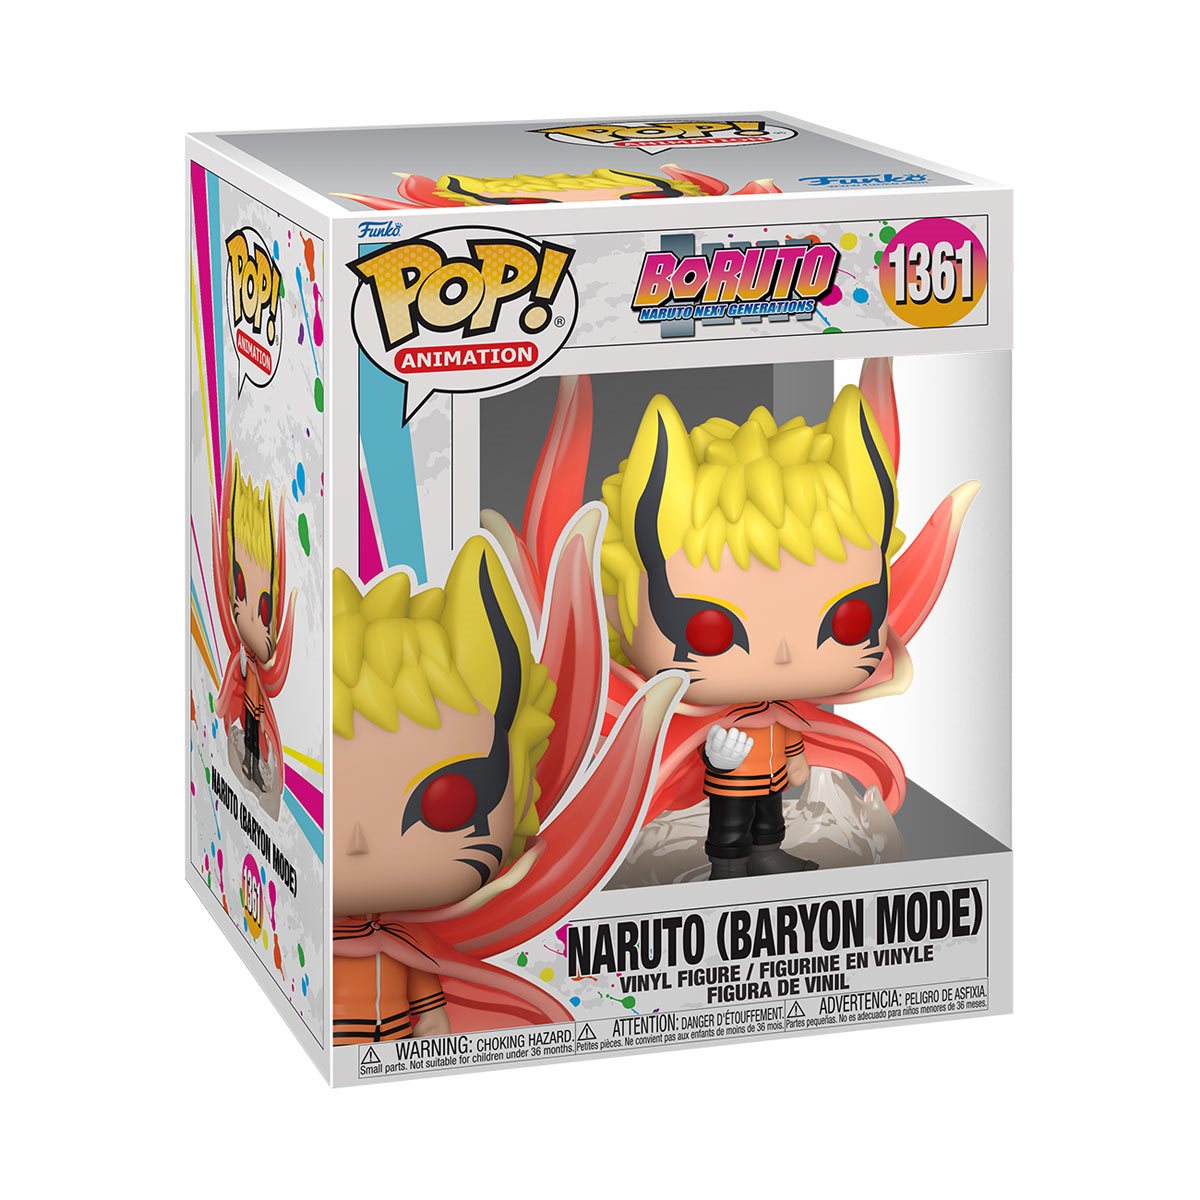 Funko Pop Animation Boruto Naruto (Baryon Mode) 6inch #1361